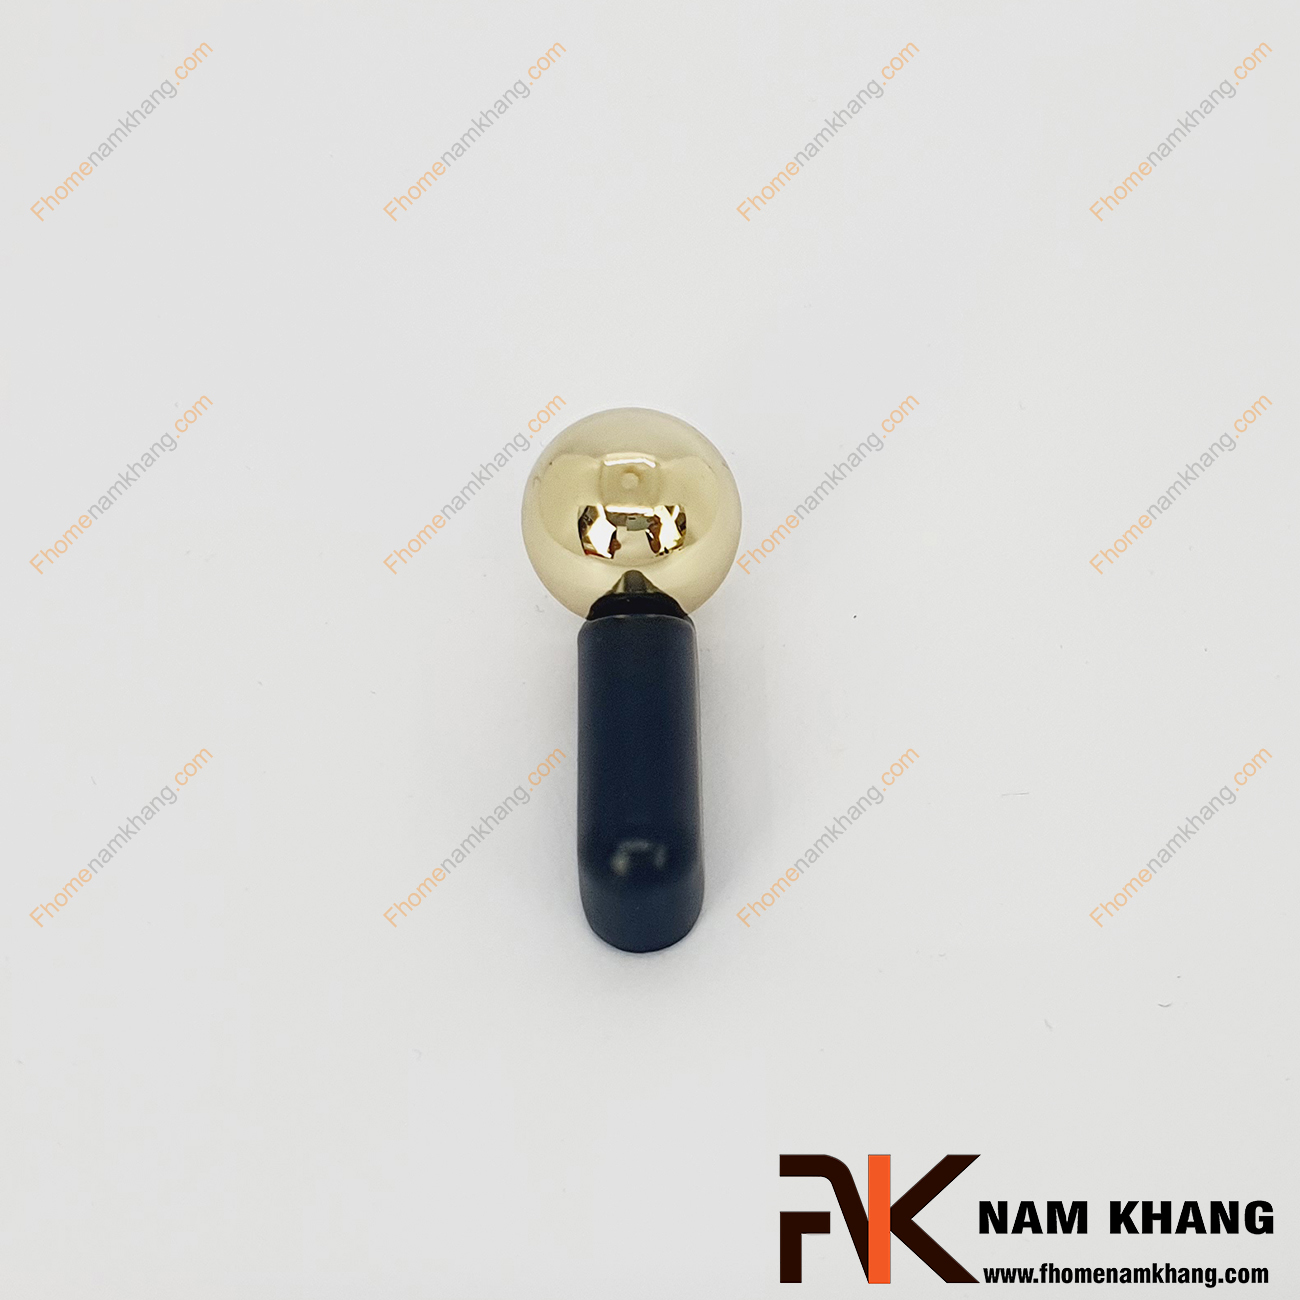 Tay nắm tủ dạng thanh tròn đen phối bi vàng NK393-DV- sản phẩm tay nắm tủ dạng lắp ghép từ 2 phần thanh tròn và viên bi cầu độc đáo